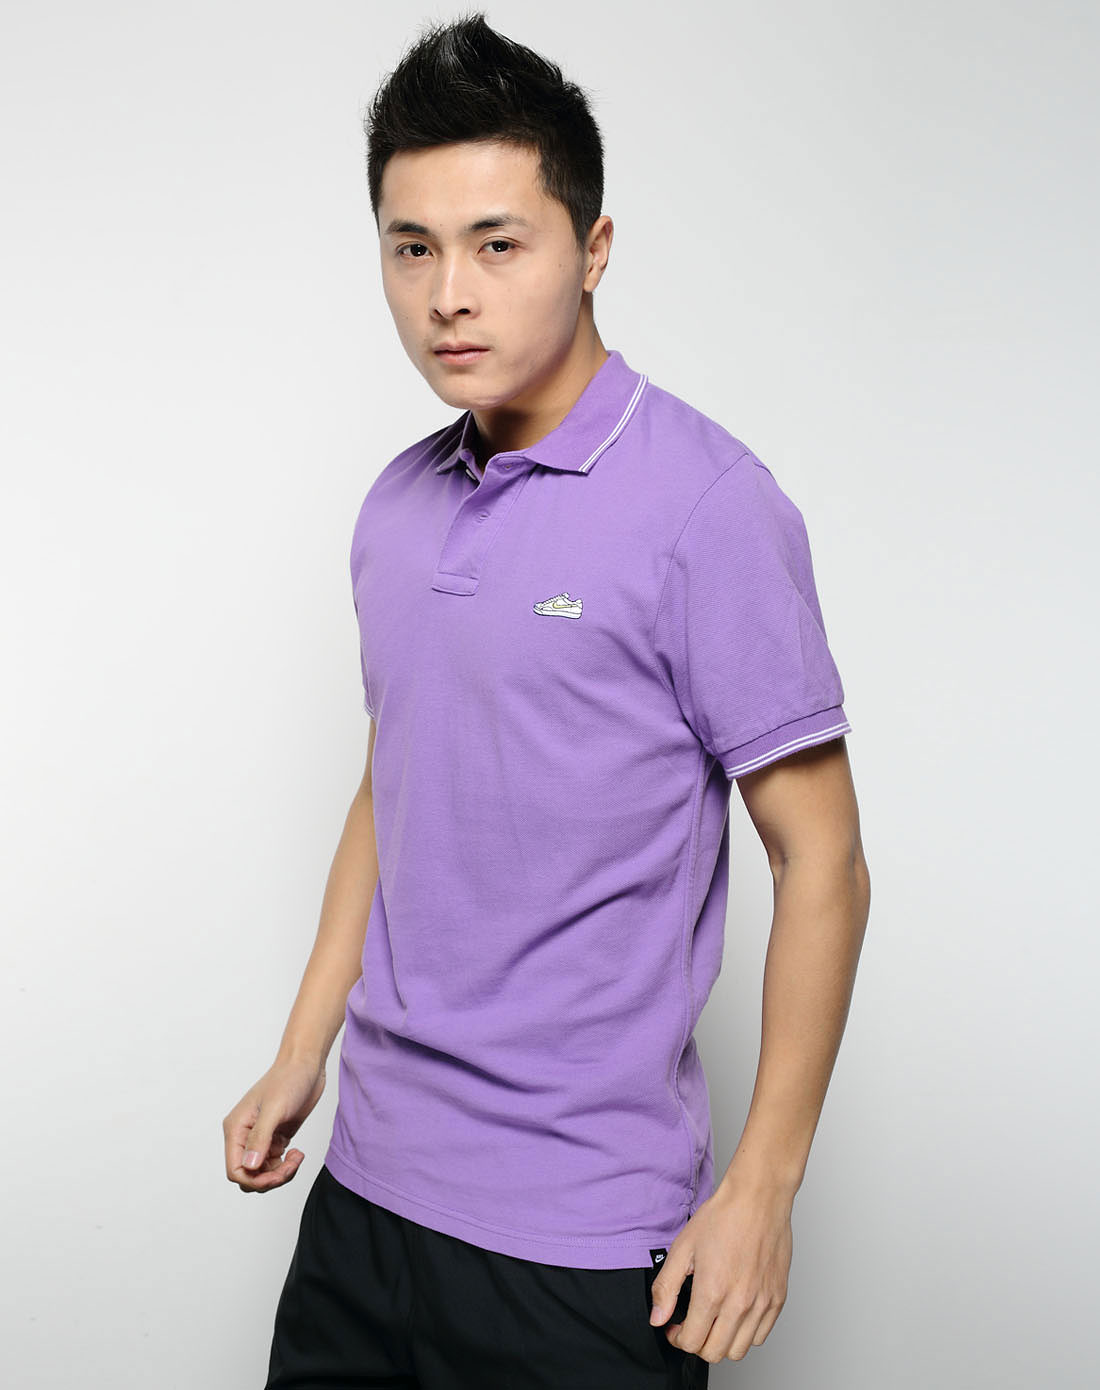 男子紫色短袖polo衫